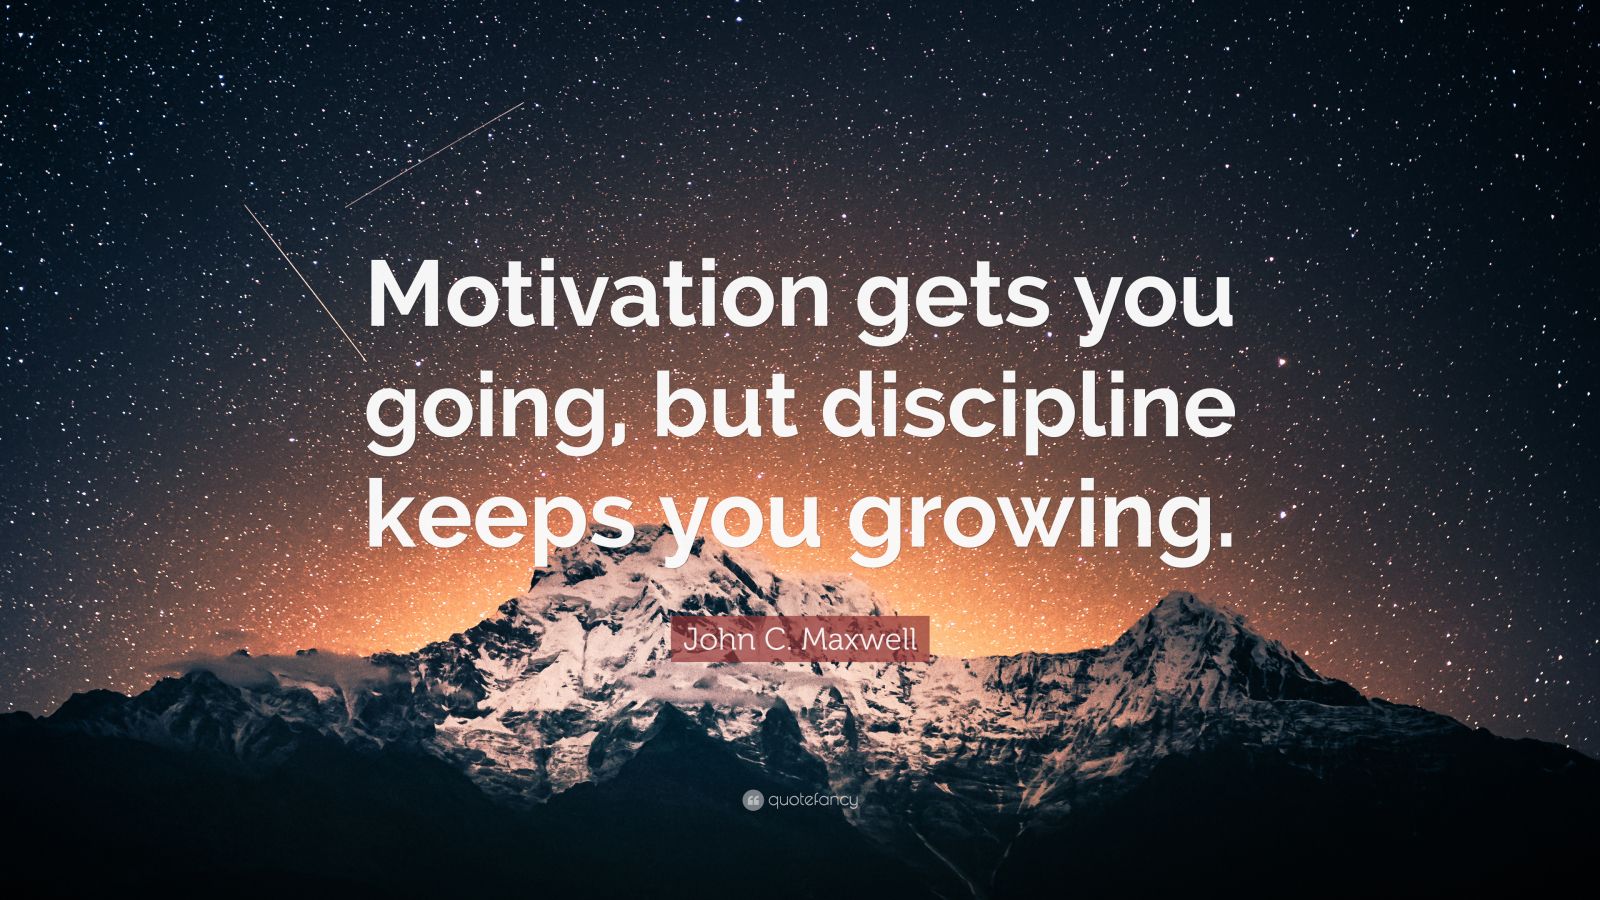 Không có việc gì khó, chỉ sợ lòng không bền - 4674819 john c maxwell quote motivation gets you going but discipline